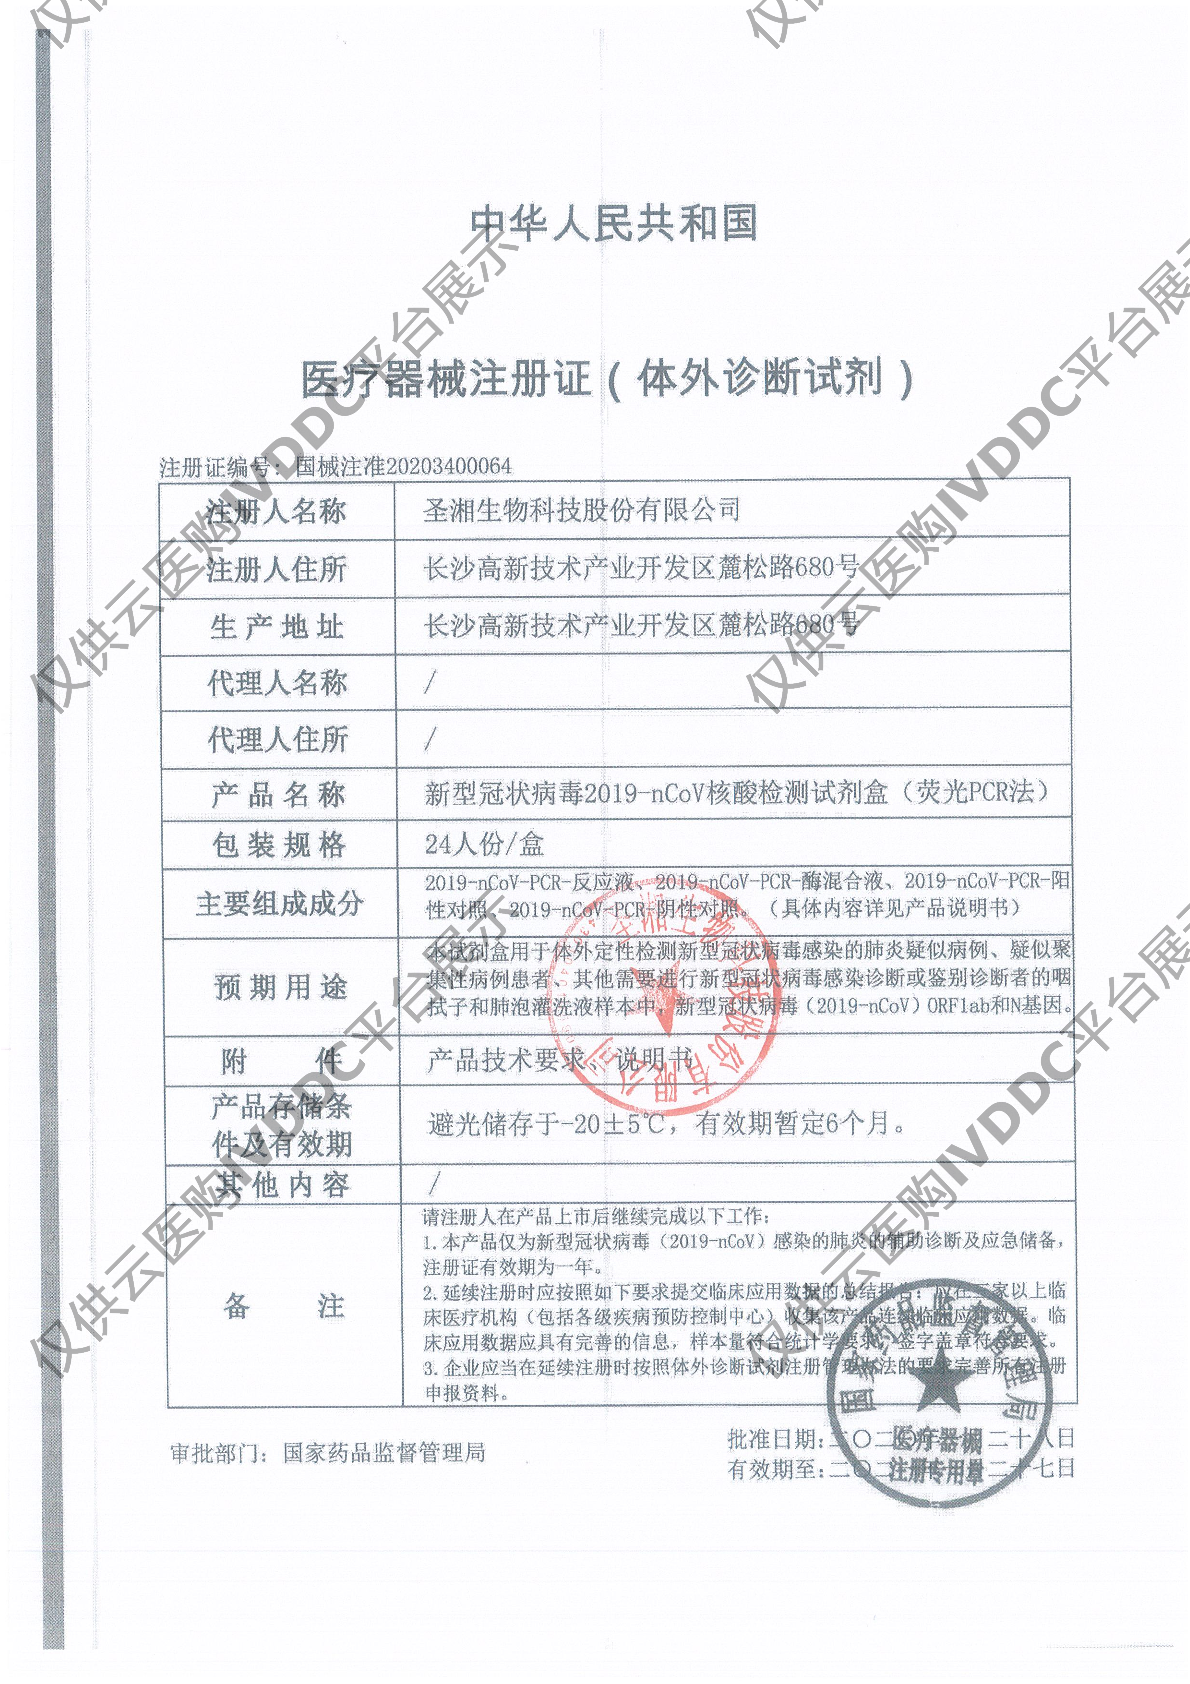 【圣湘】新型冠状病毒2019-nCoV核酸检测试剂盒(荧光PCR法)注册证